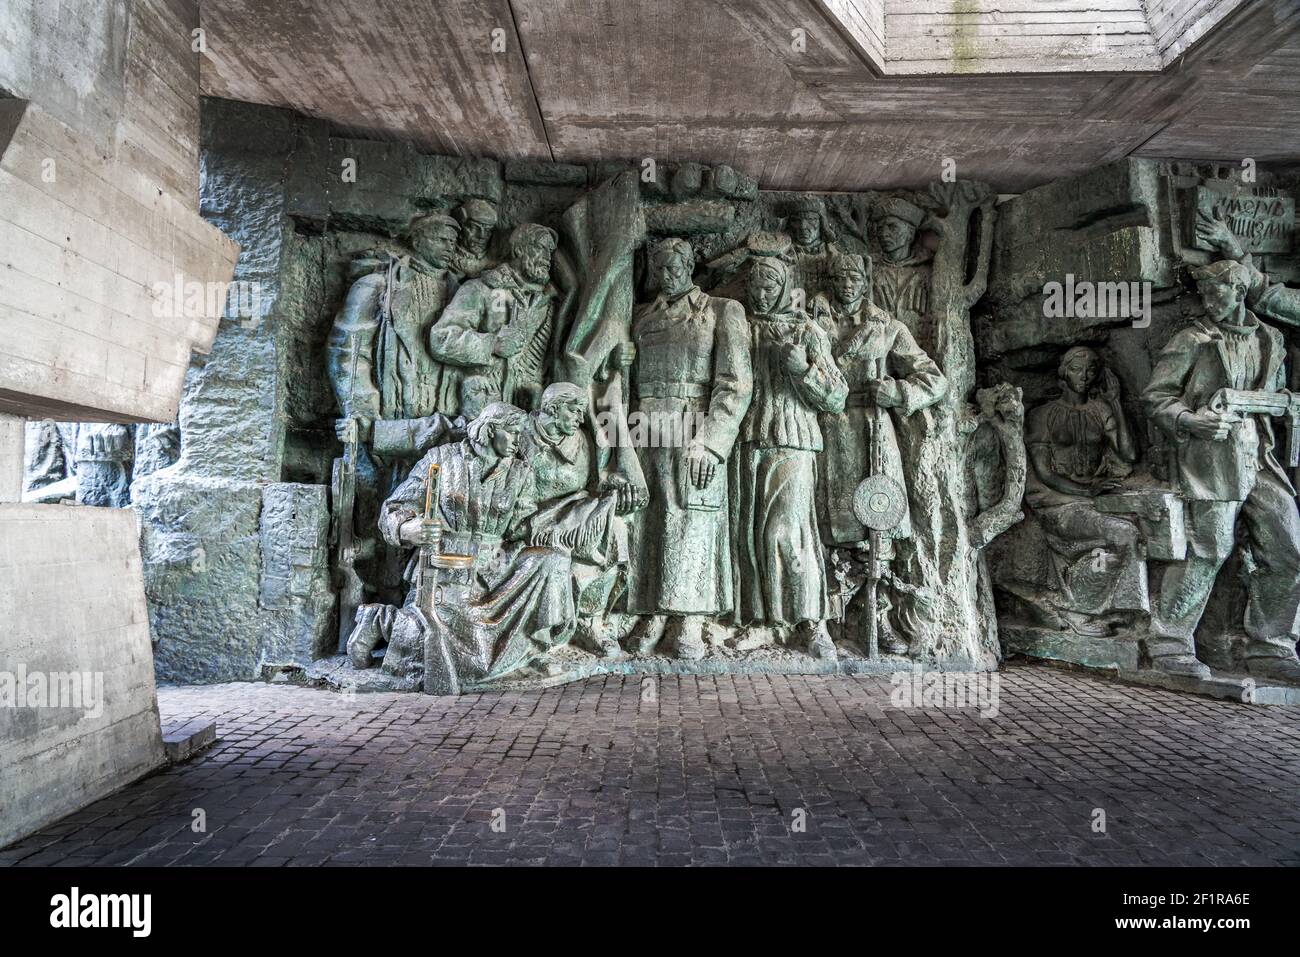 Galerie de sculptures au Musée national de l'histoire de l'Ukraine dans le complexe commémoratif de la Seconde Guerre mondiale - Kiev, Ukraine Banque D'Images